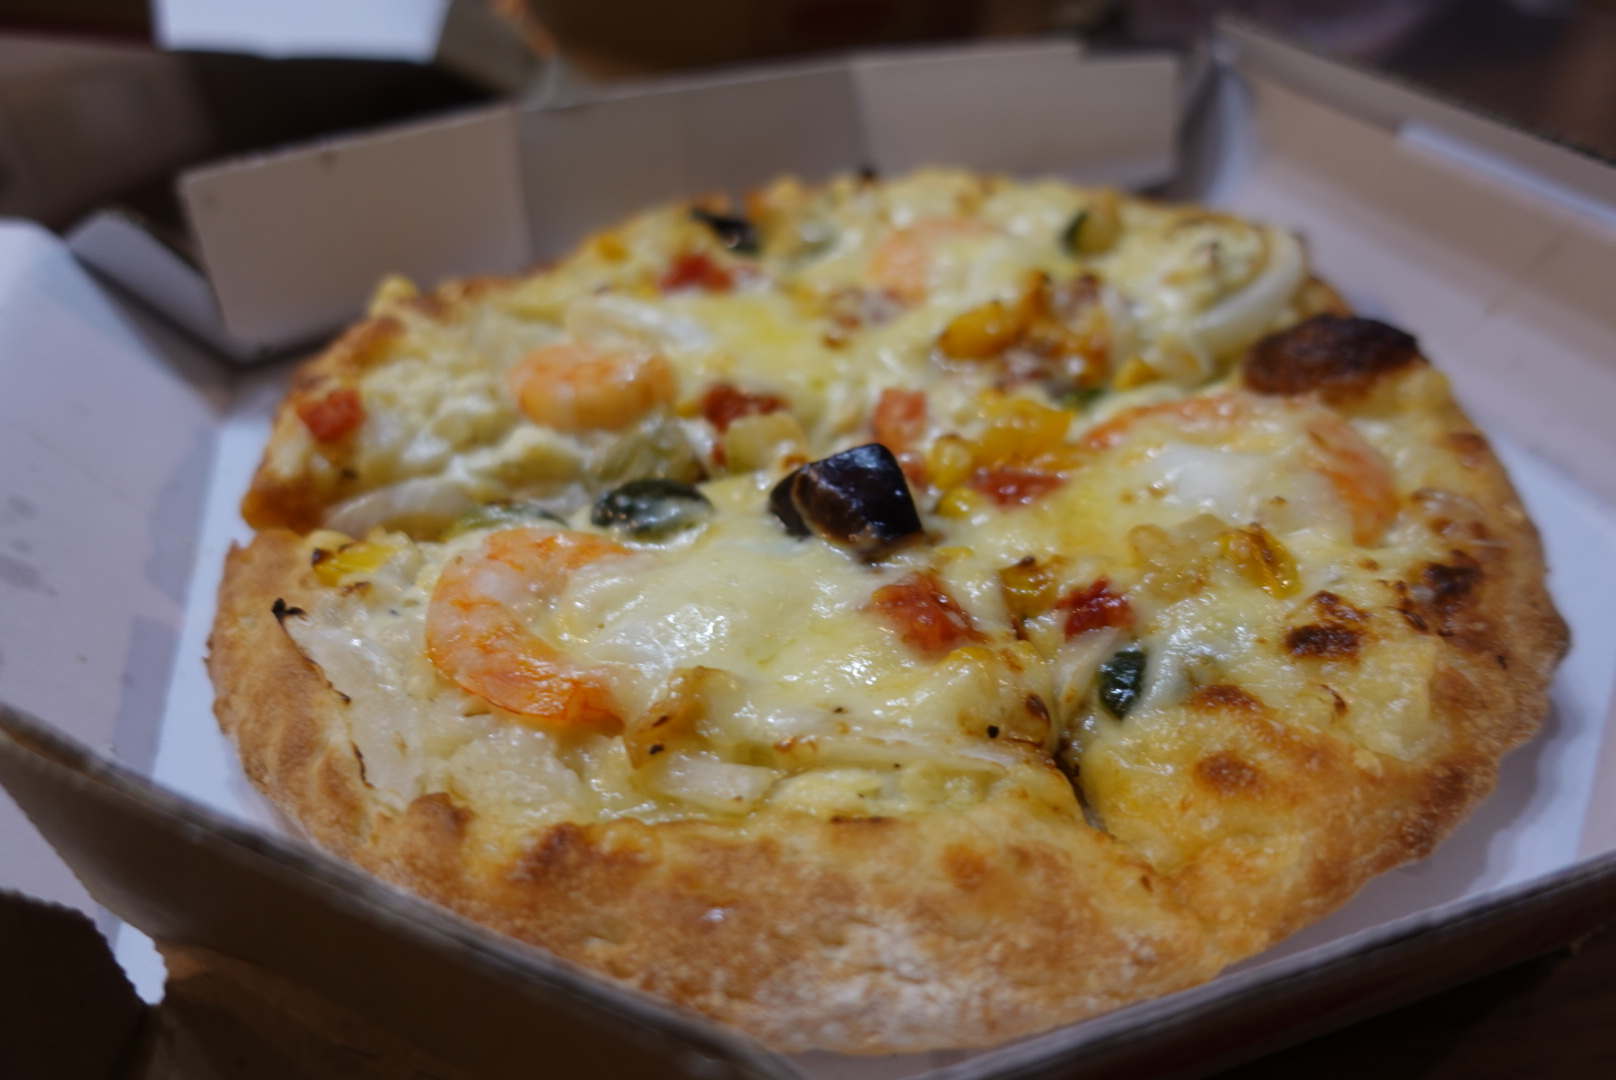 津田沼 ピザヨッカー 子供も安心 有名パン屋のパン生地で作る美味しい無添加宅配ピザ 3 5 ご飯を食べたら吹っ飛んだ